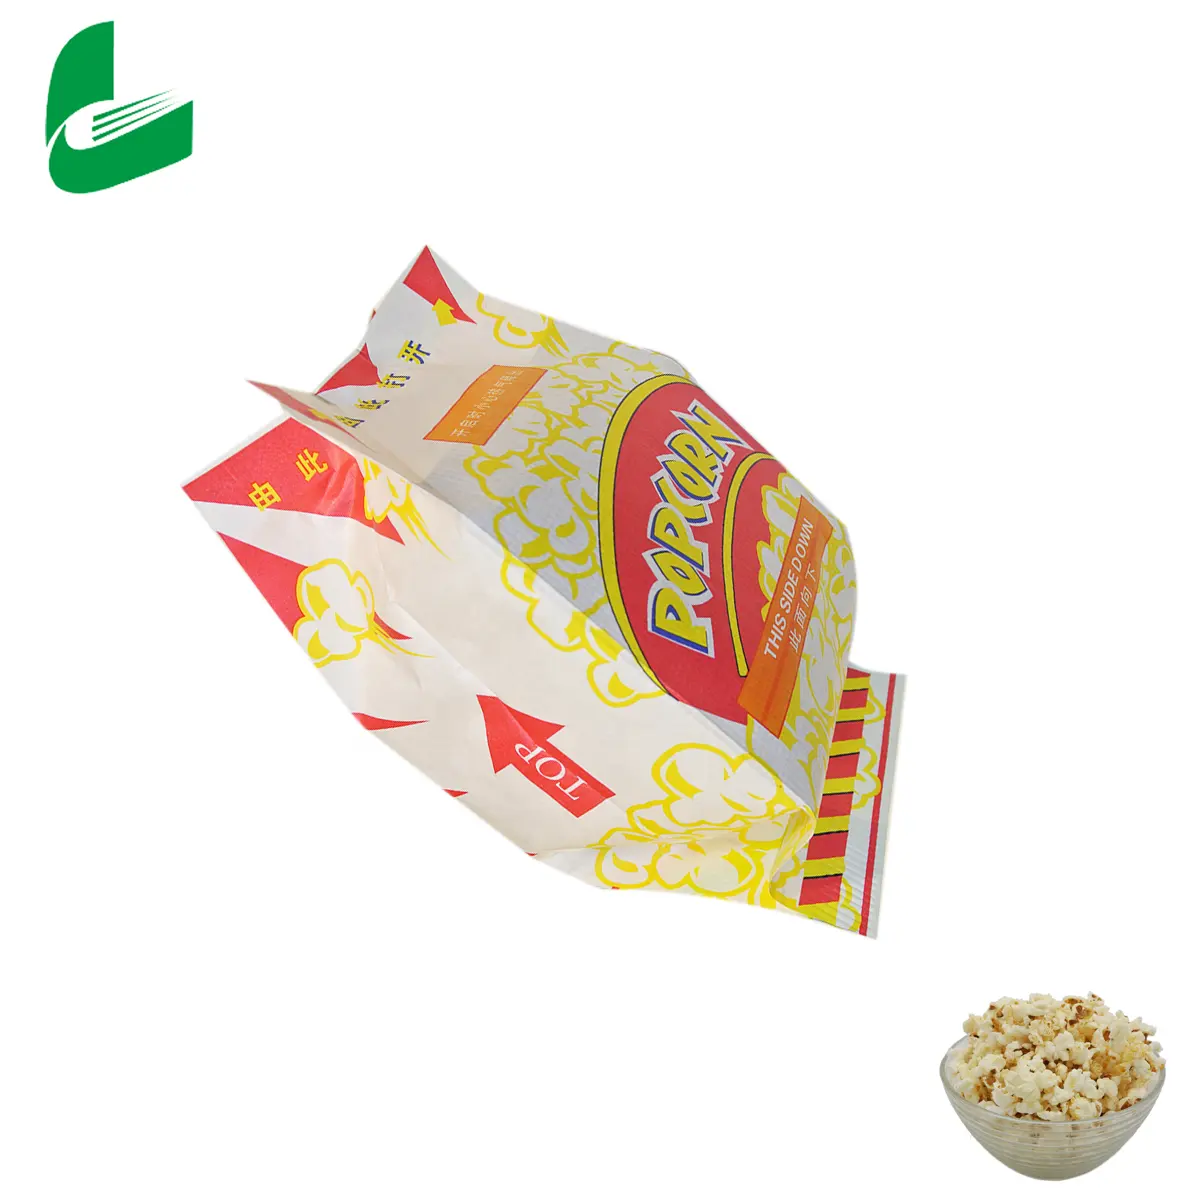 Kantong Kertas Cetak Popcorn Microwave untuk Membuat Popcorn Microwave